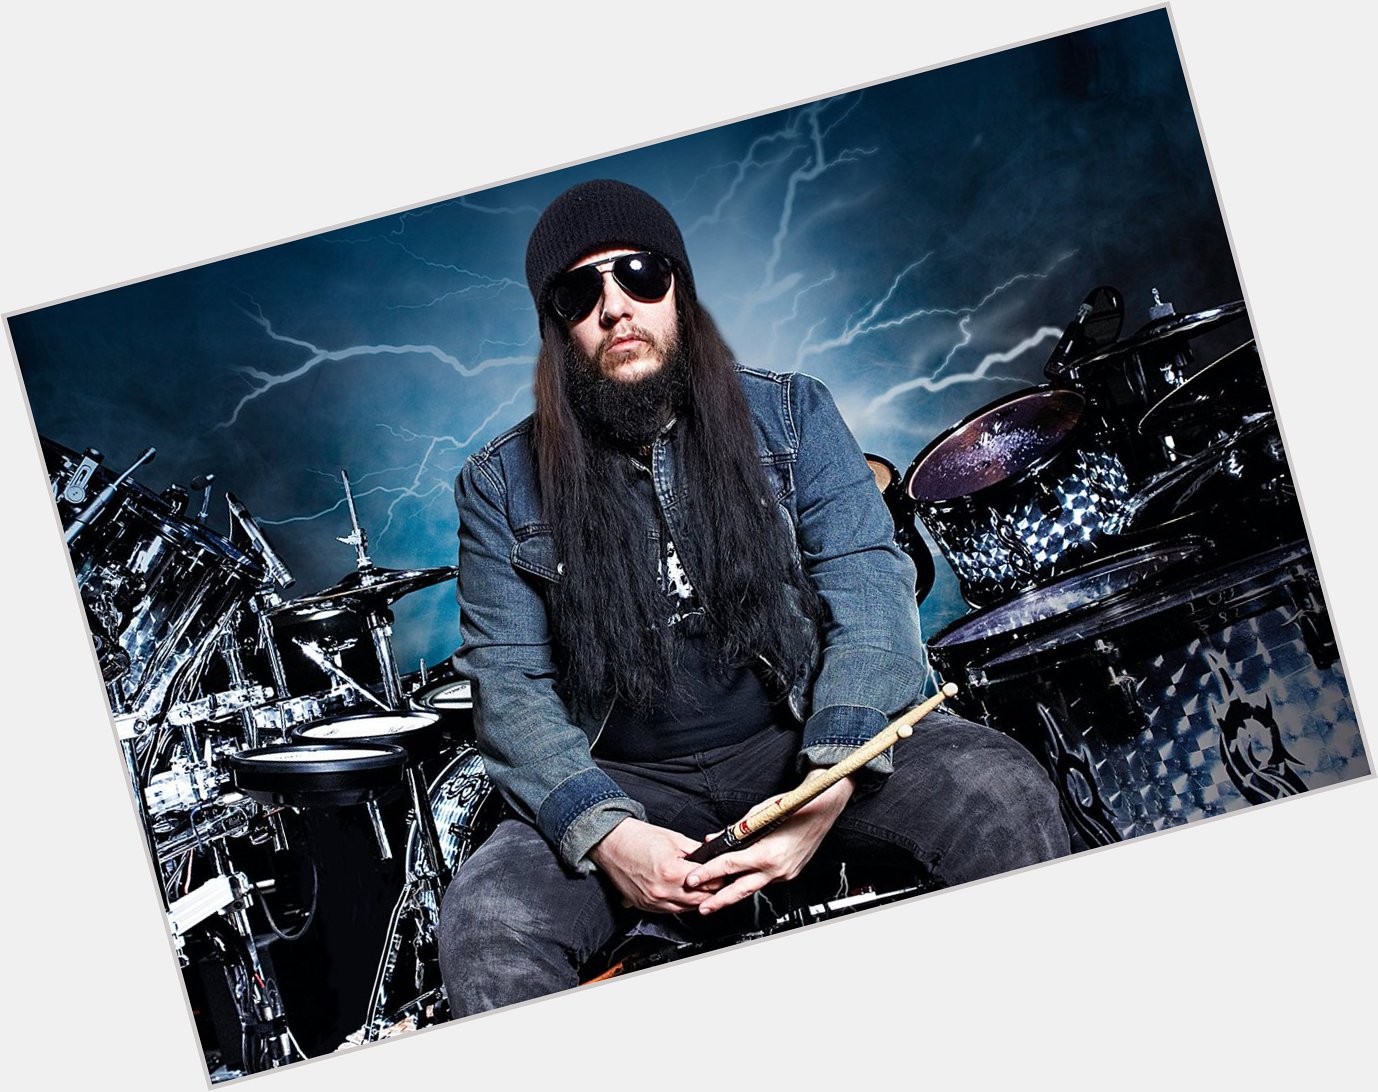 Happy birthday to Joey Jordison of Slipknot & the Murderdolls 